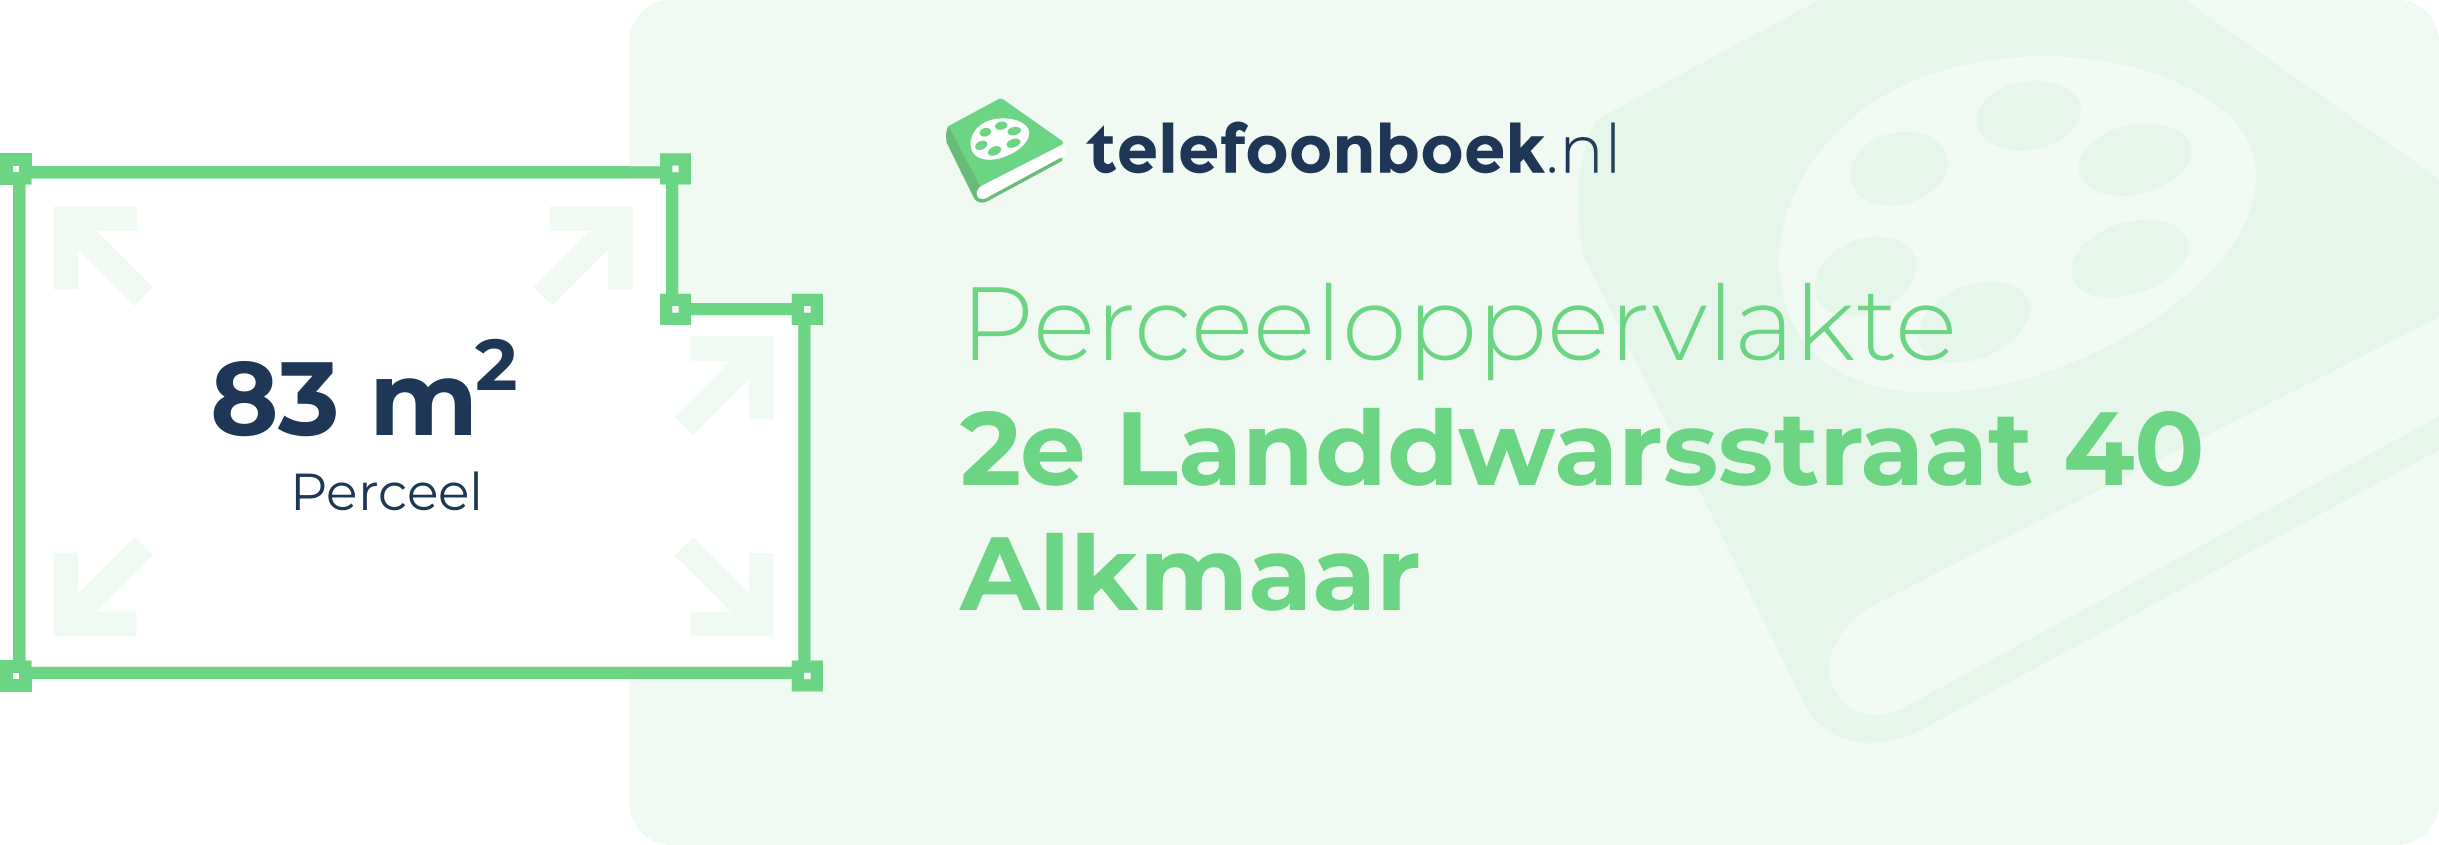 Perceeloppervlakte 2e Landdwarsstraat 40 Alkmaar